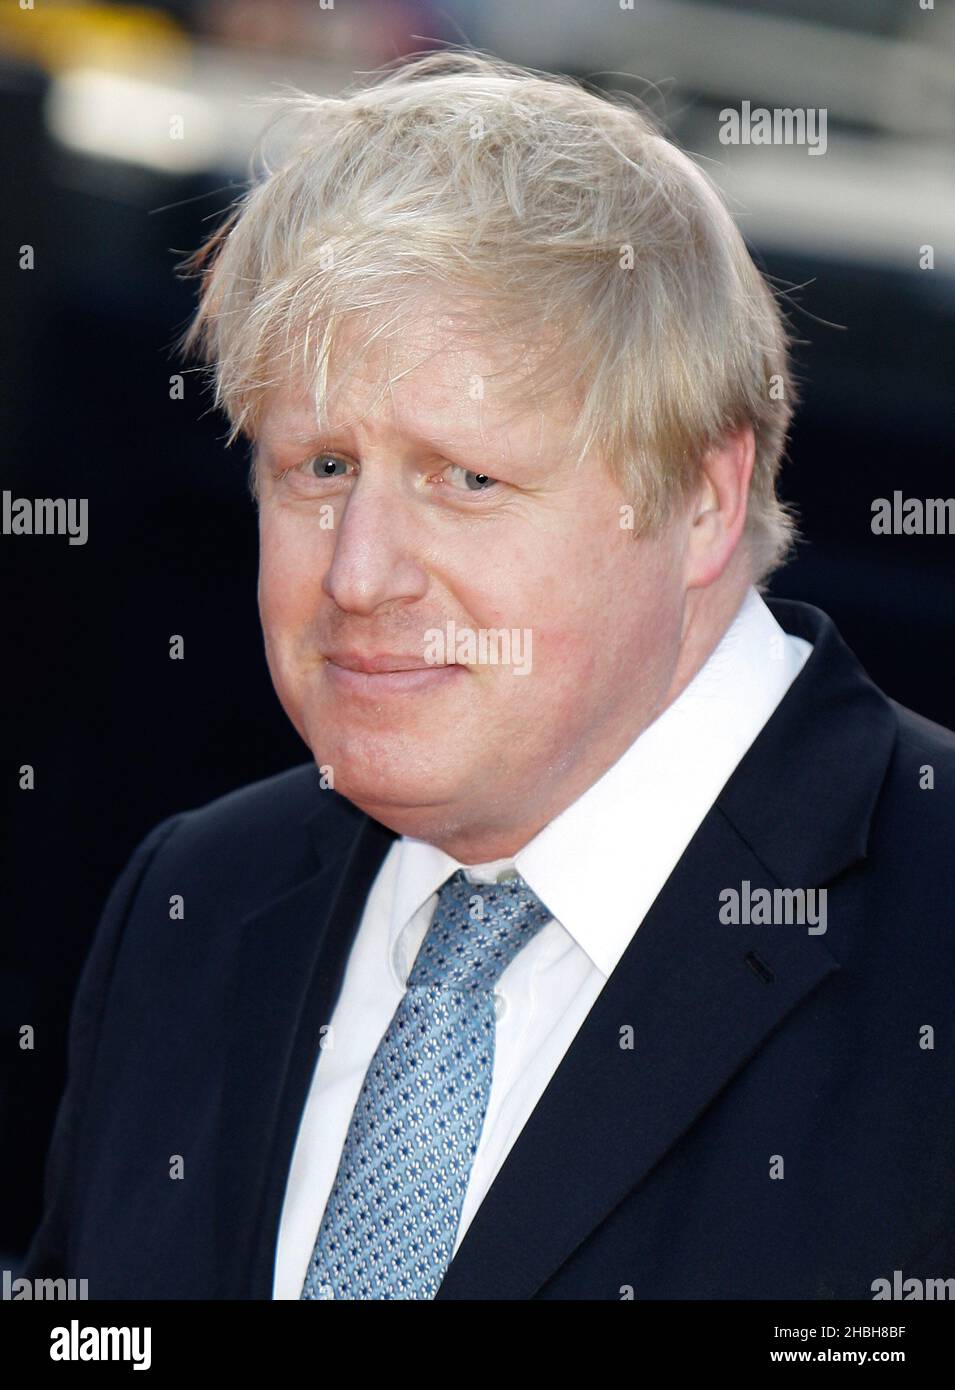 Le maire Boris Johnson assiste aux arrivées des BT Sports Industry Awards à Battersea Evolution à Londres. Banque D'Images